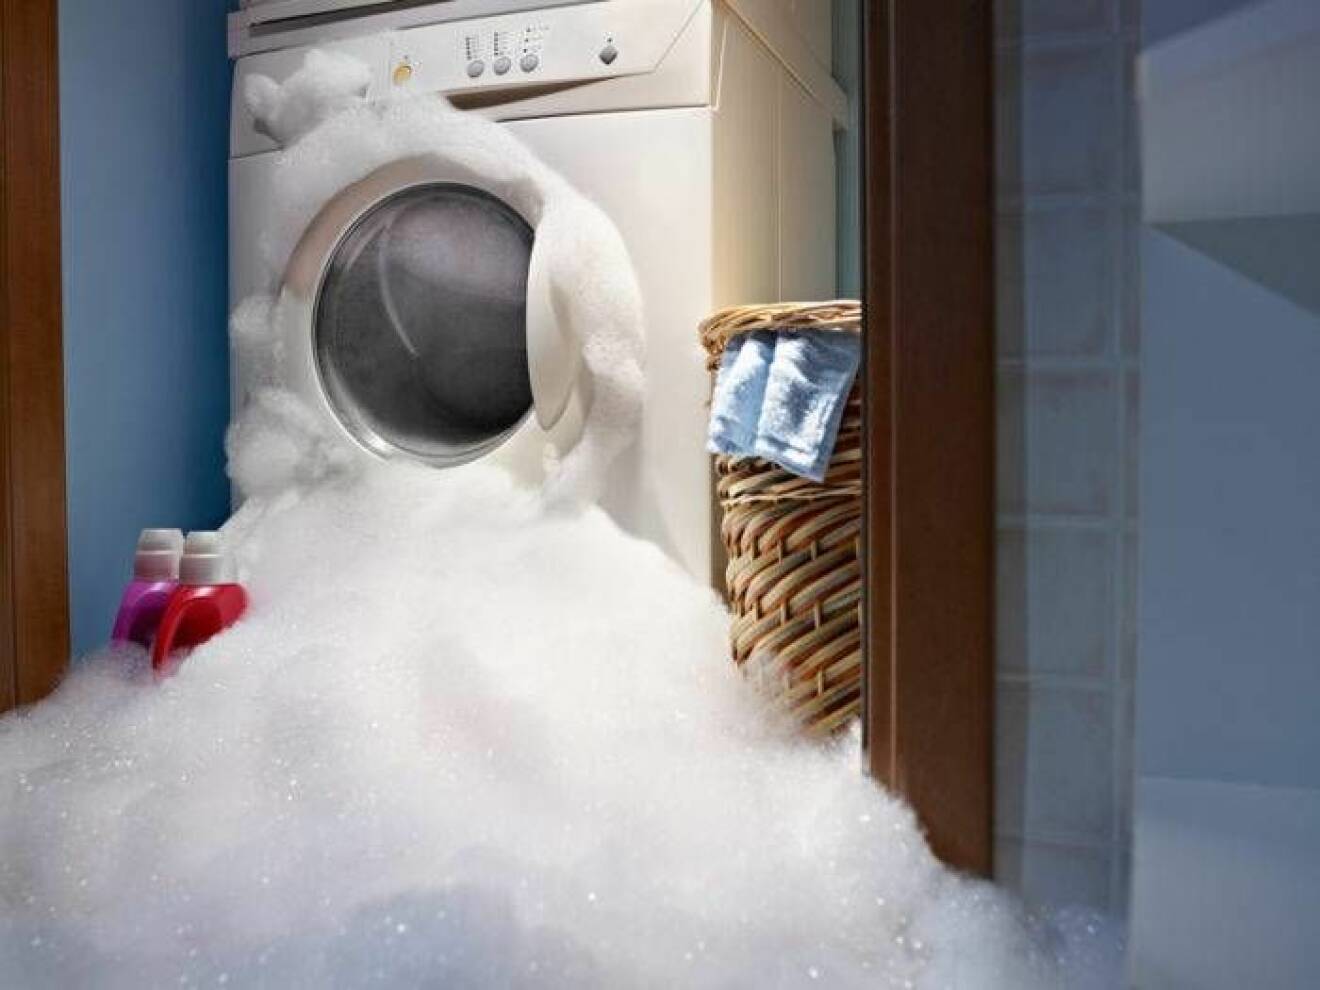 Tvättmedel har läckt ur från tvättmaskinen i form av vitt skum